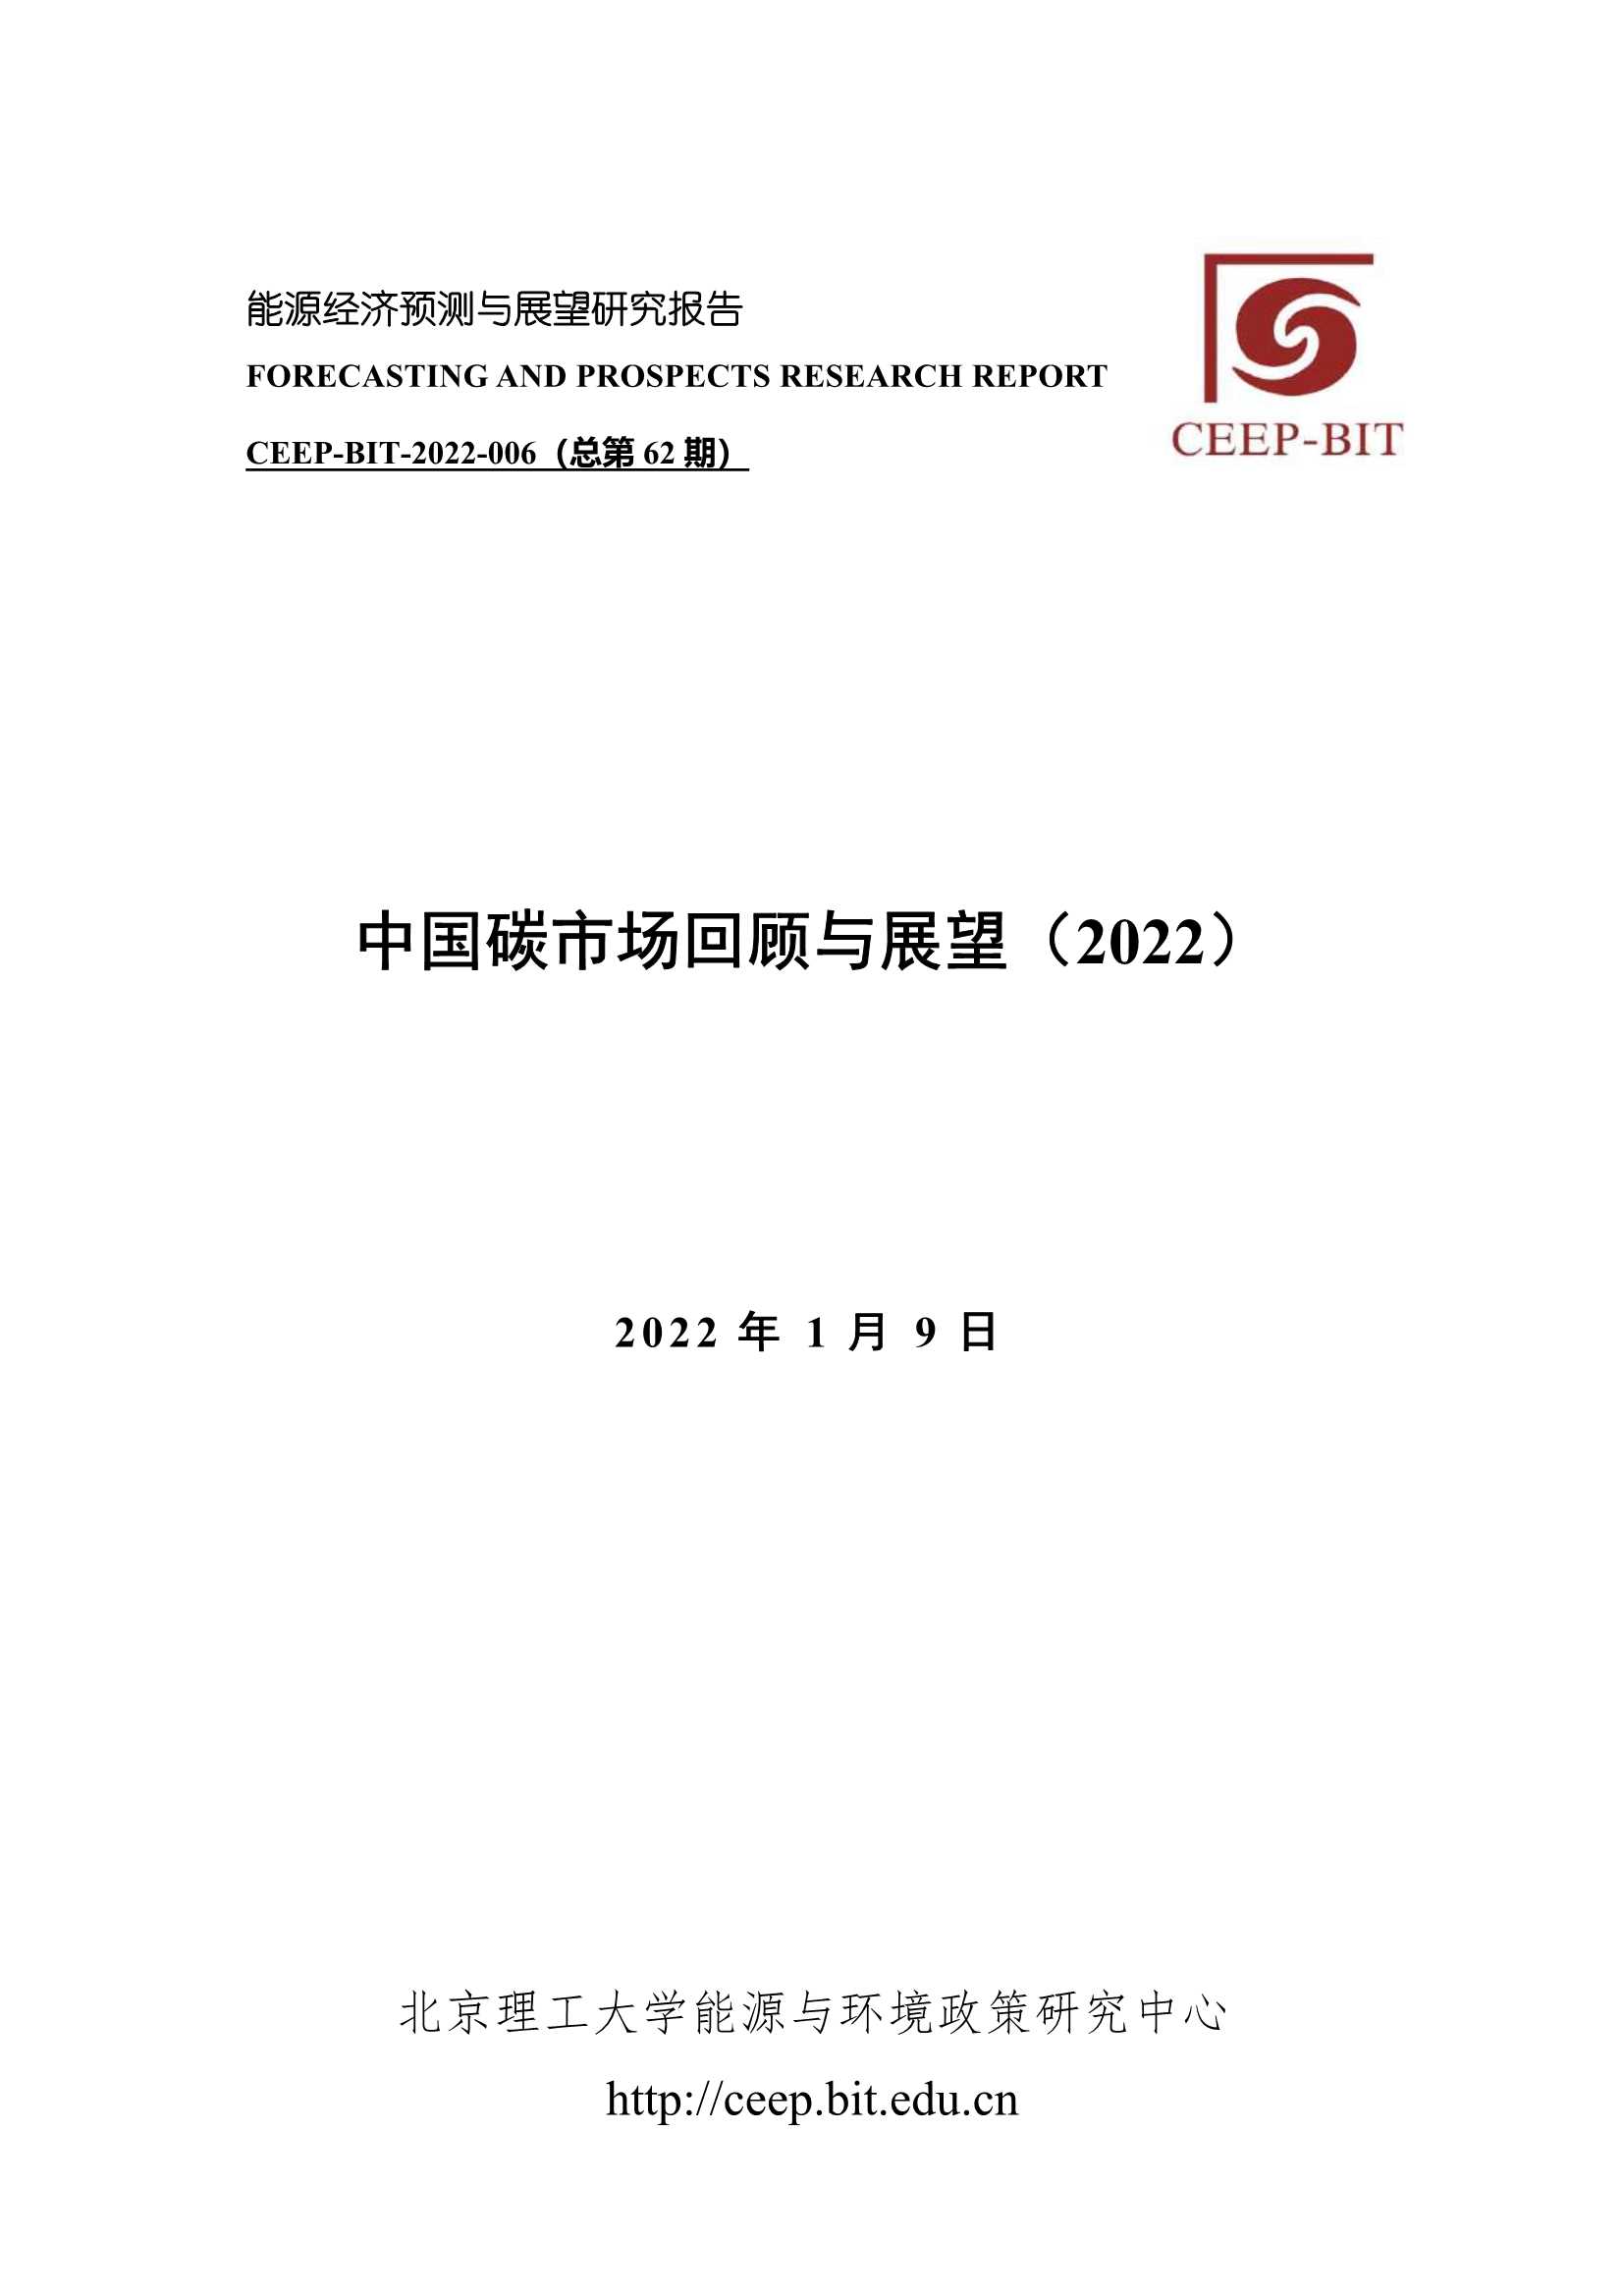 中国碳市场回顾与展望（2022）-2022.03-37页